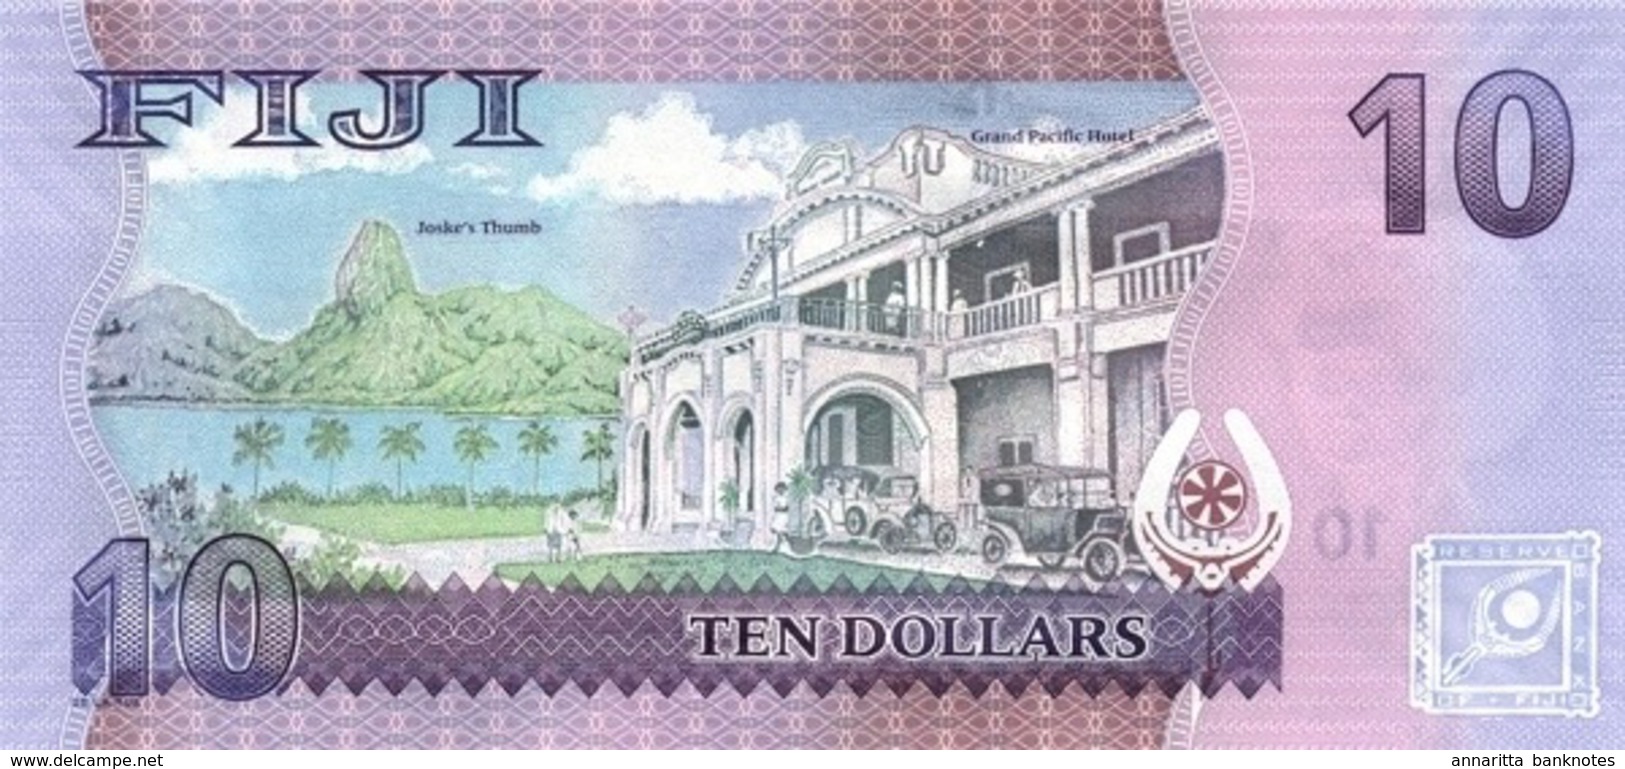 FIJI 10 DOLLARS ND (2013) P-116 UNC  [FJ527a] - Figi